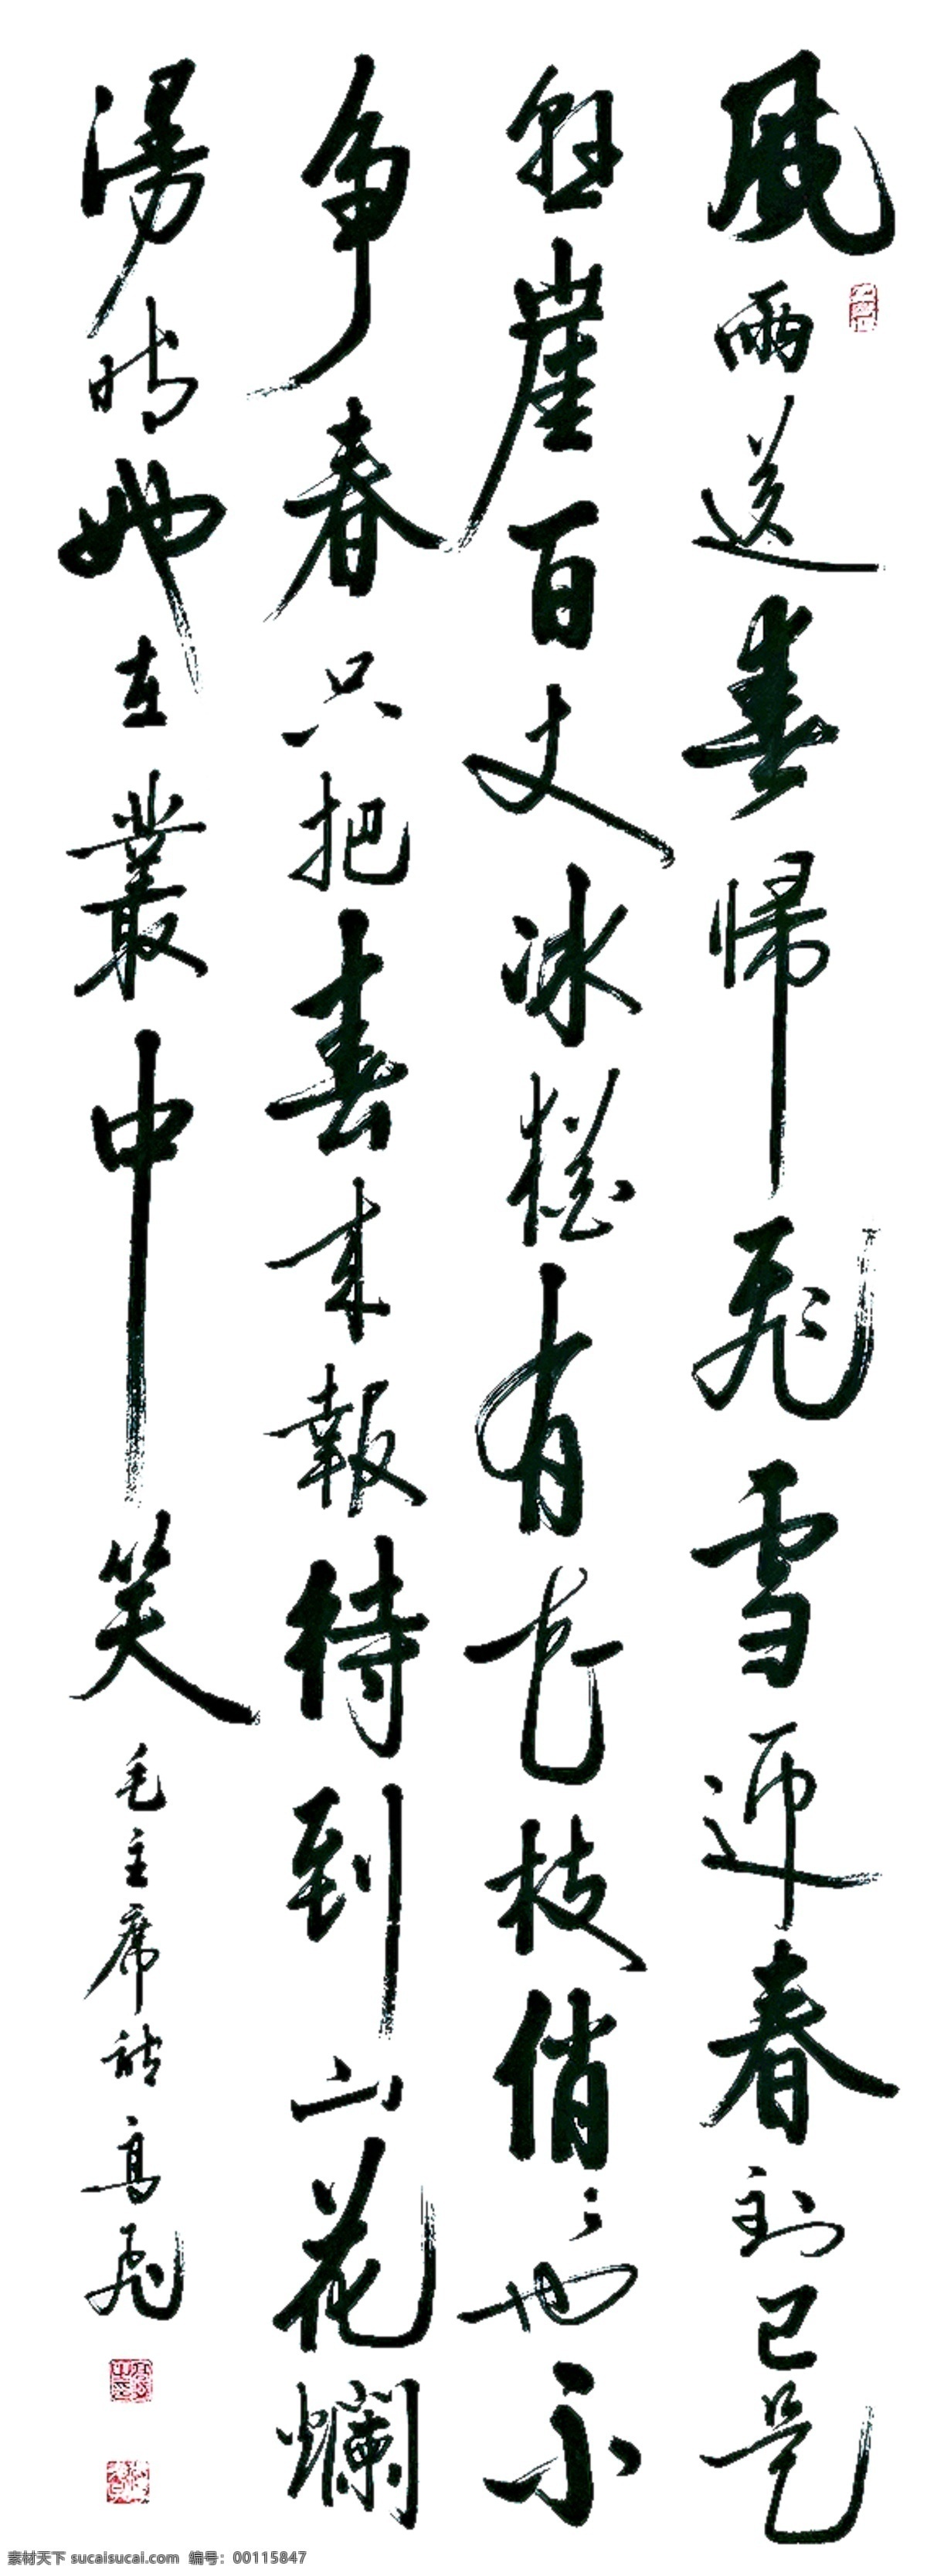 中国 书法 毛笔字 中国大字 墨 文化传统 艺术 传承 毛主席诗句 文化艺术 绘画书法